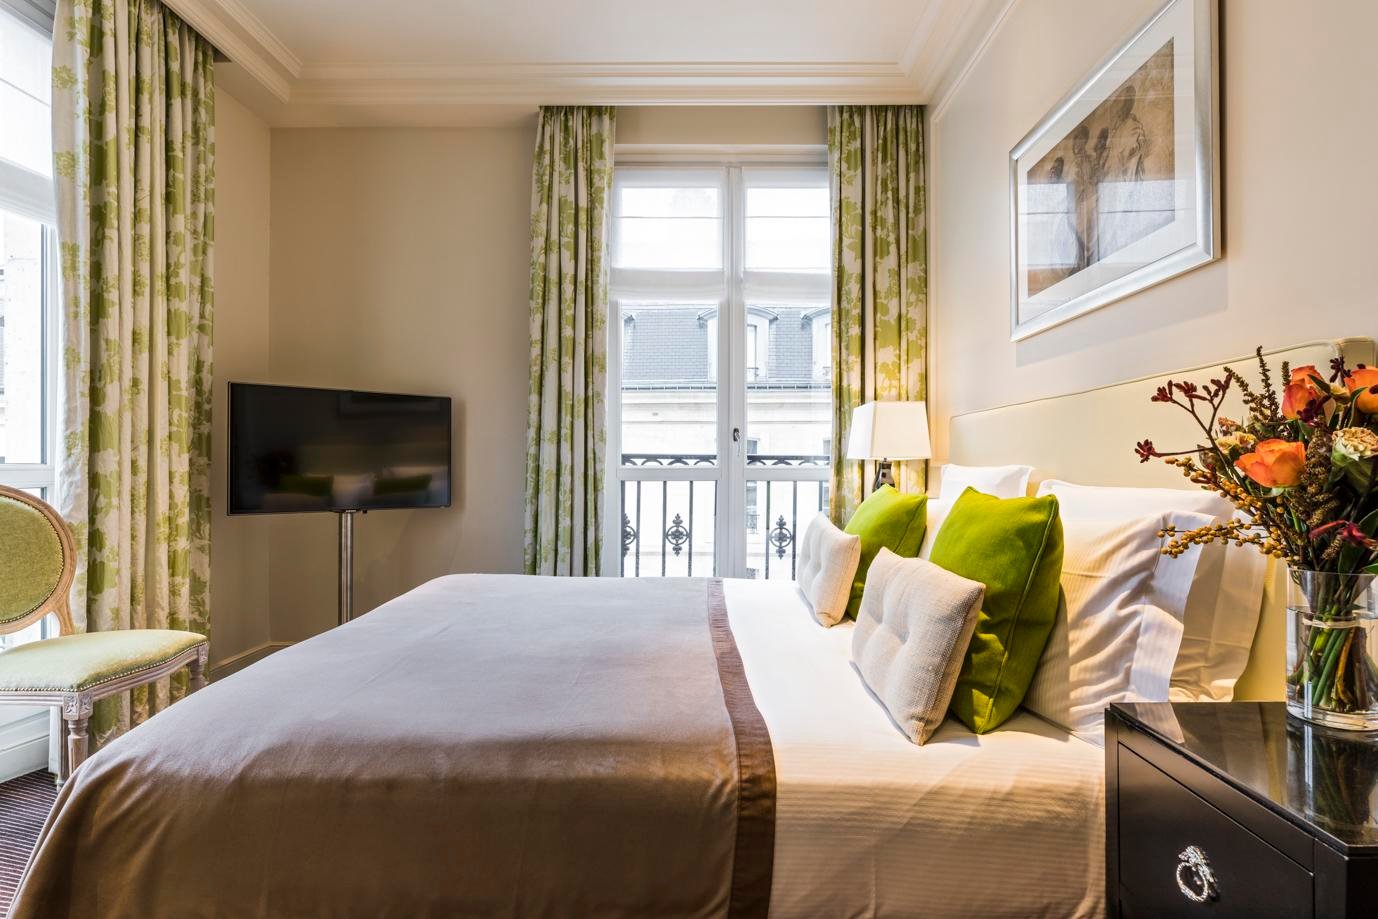 Best Hotels in Paris: A Review of Grand Hotel du Palais Royal Paris - Fathom